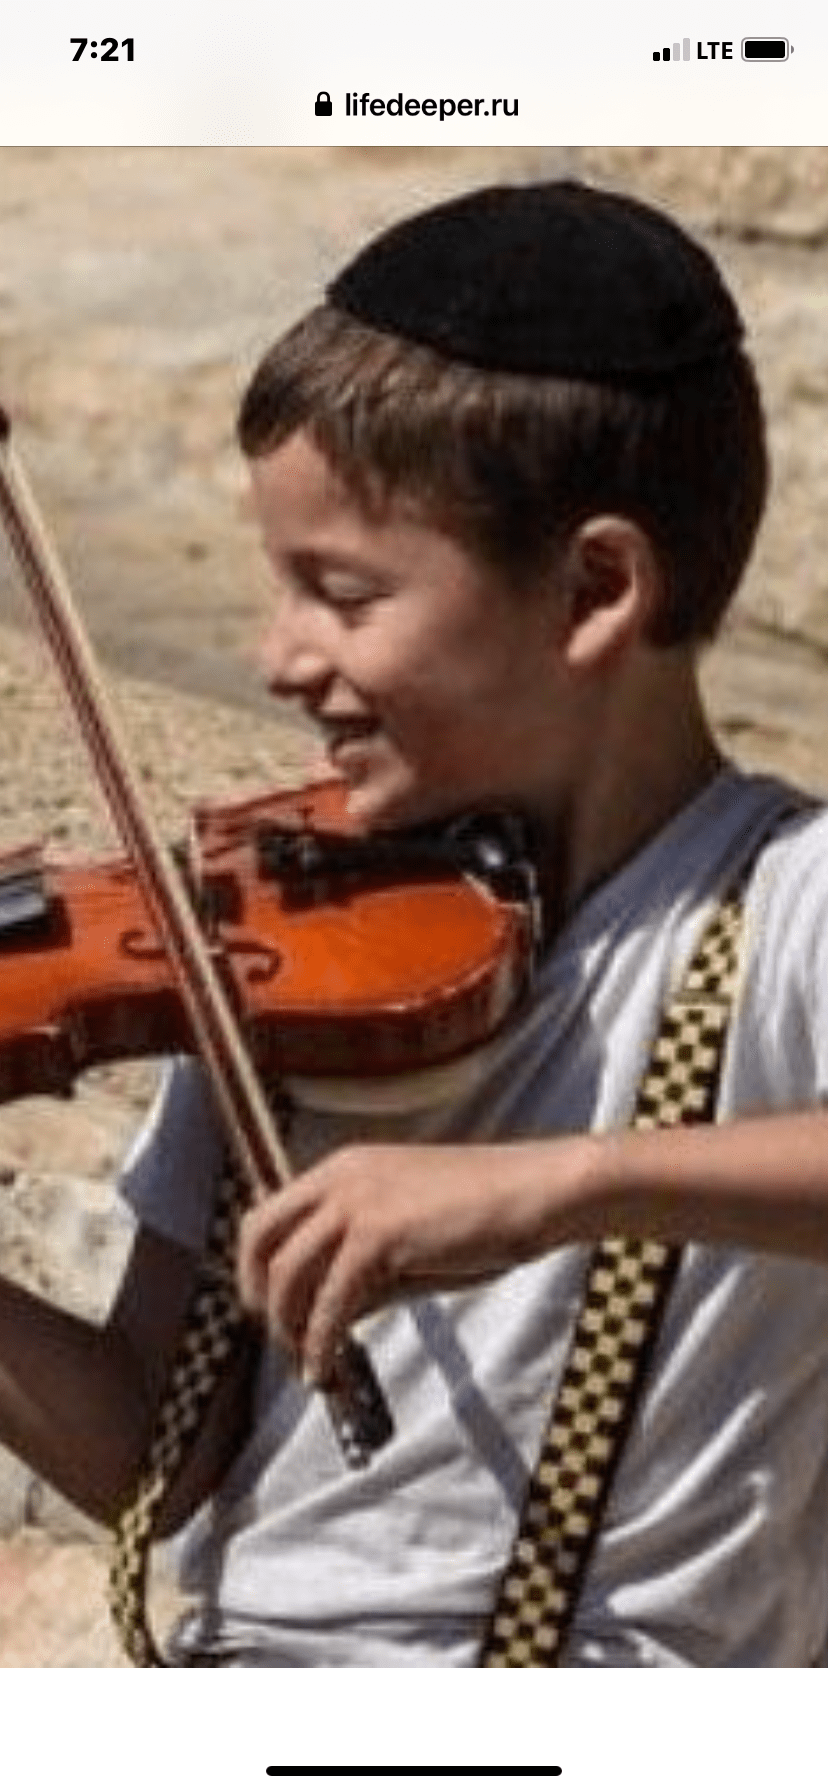 Каждый еврейский мальчик должен играть на скрипке